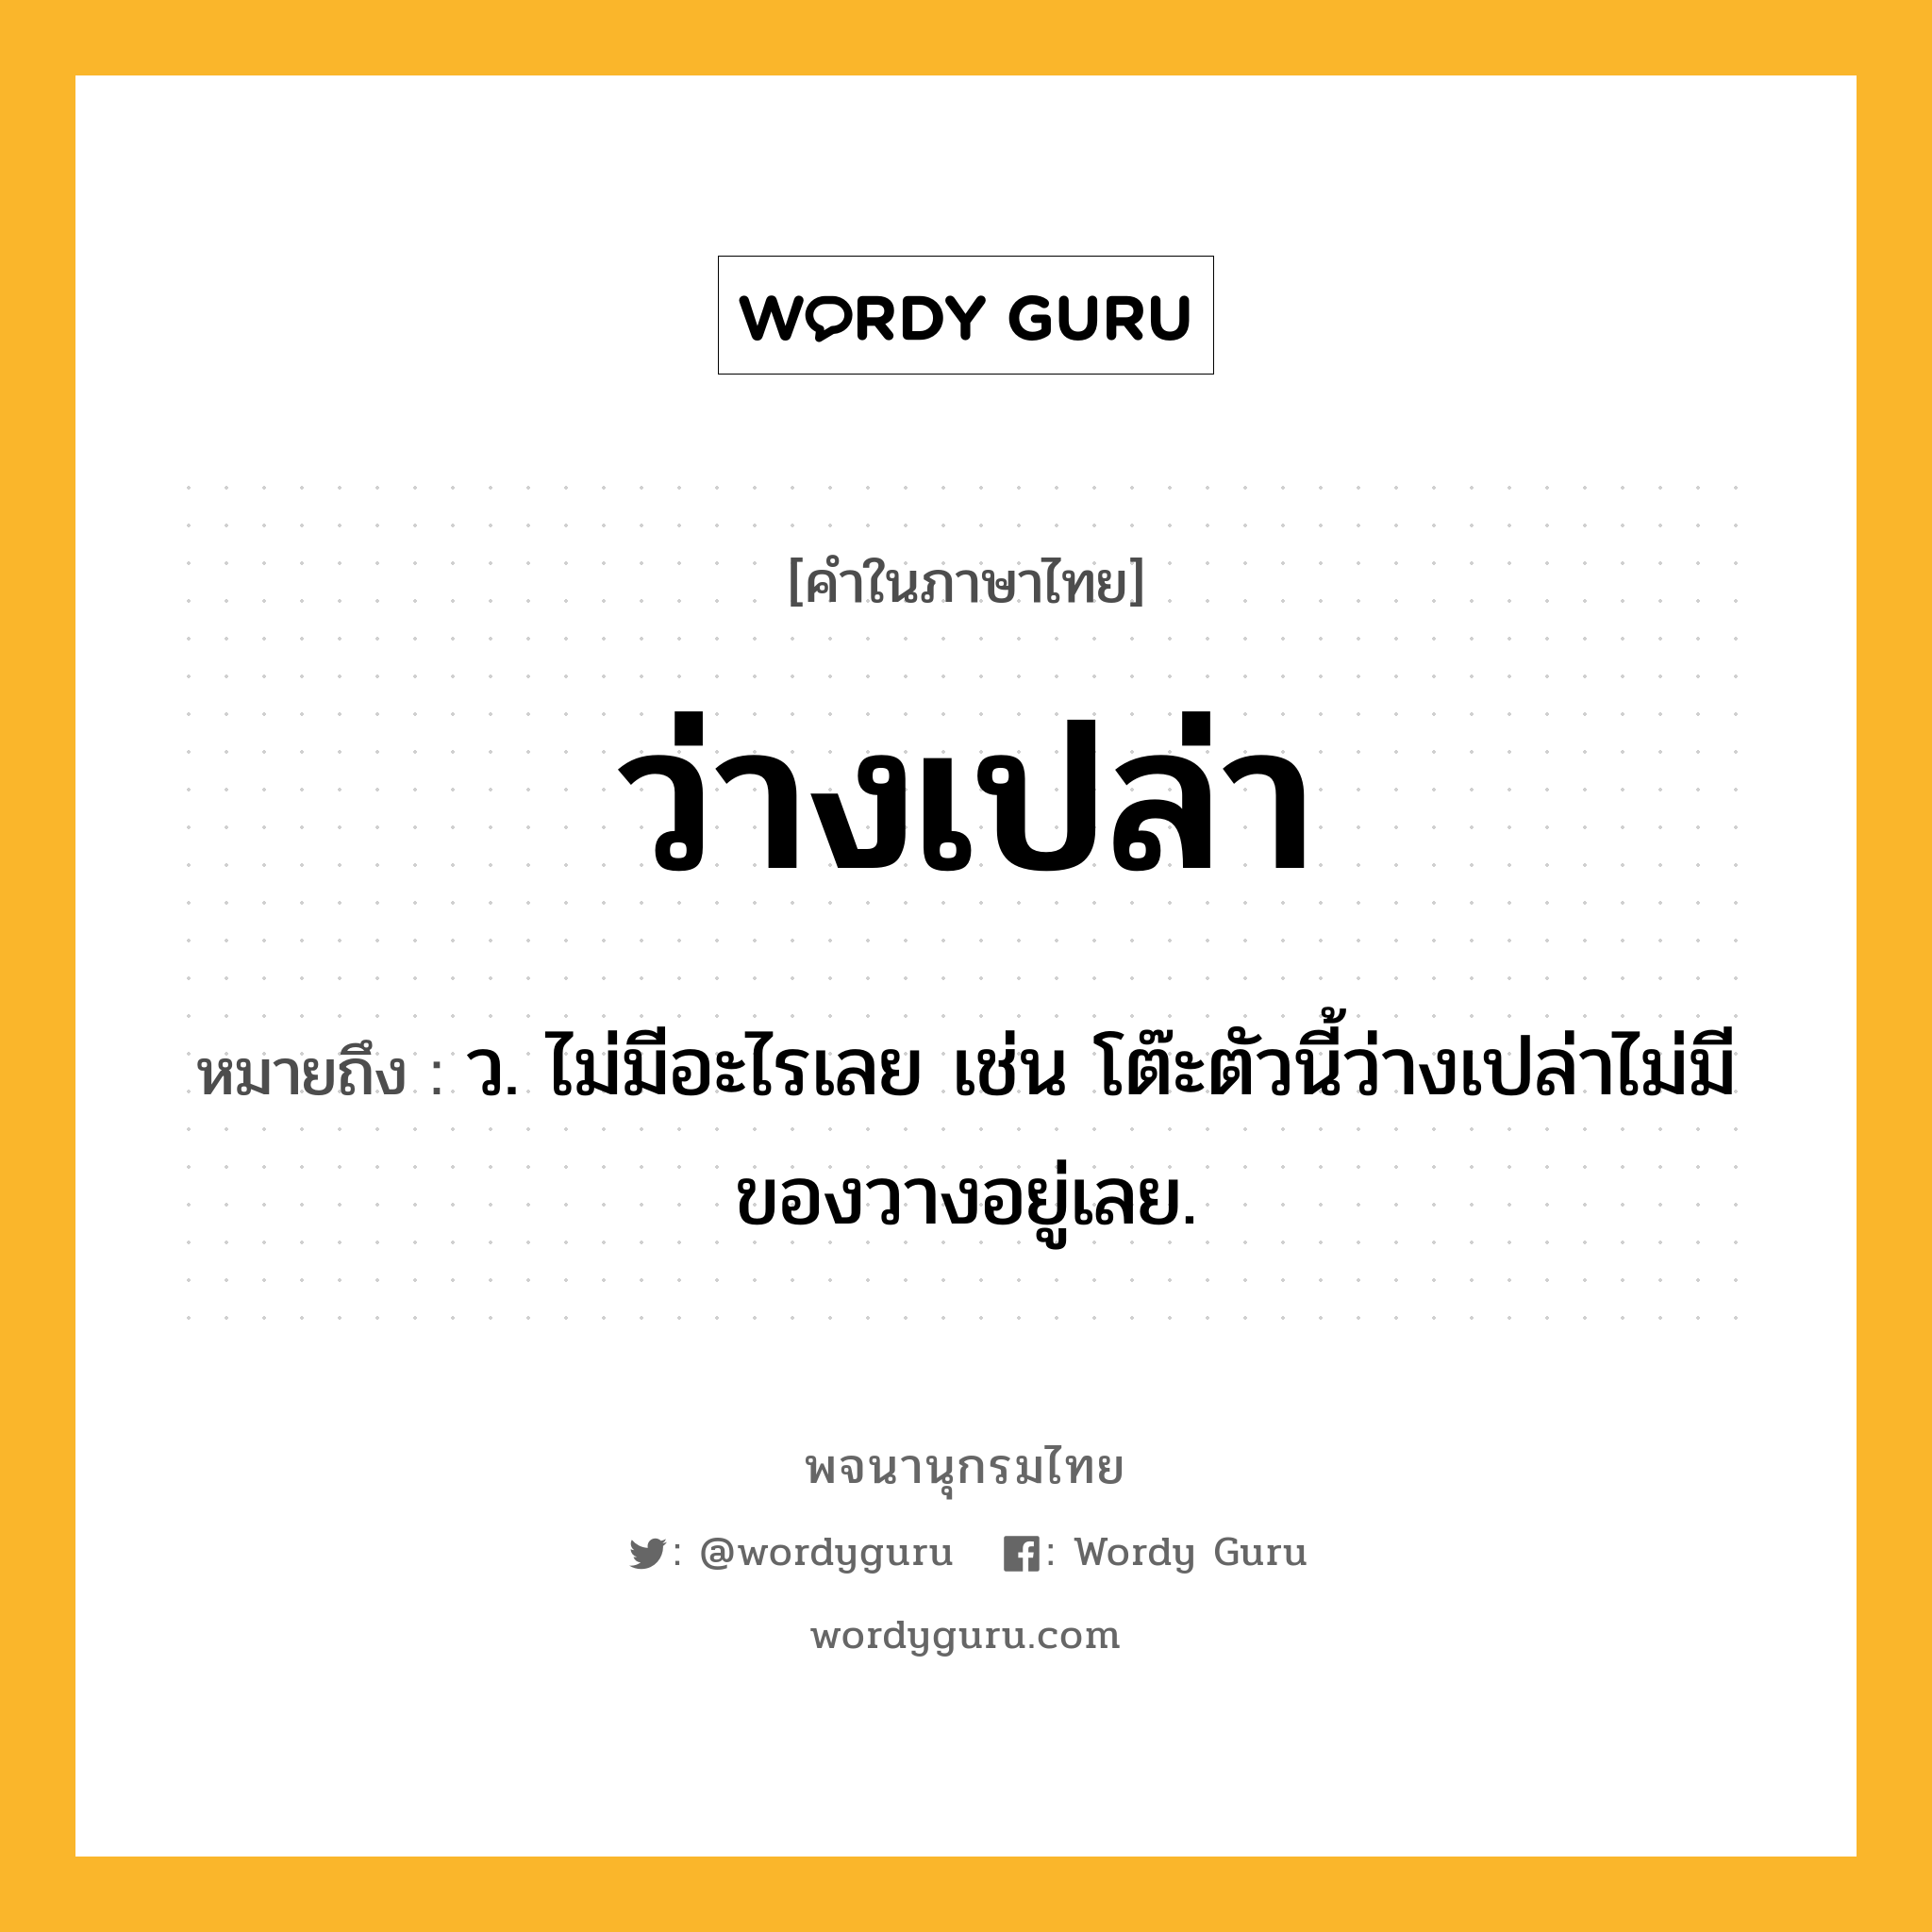 ว่างเปล่า ความหมาย หมายถึงอะไร?, คำในภาษาไทย ว่างเปล่า หมายถึง ว. ไม่มีอะไรเลย เช่น โต๊ะตัวนี้ว่างเปล่าไม่มีของวางอยู่เลย.